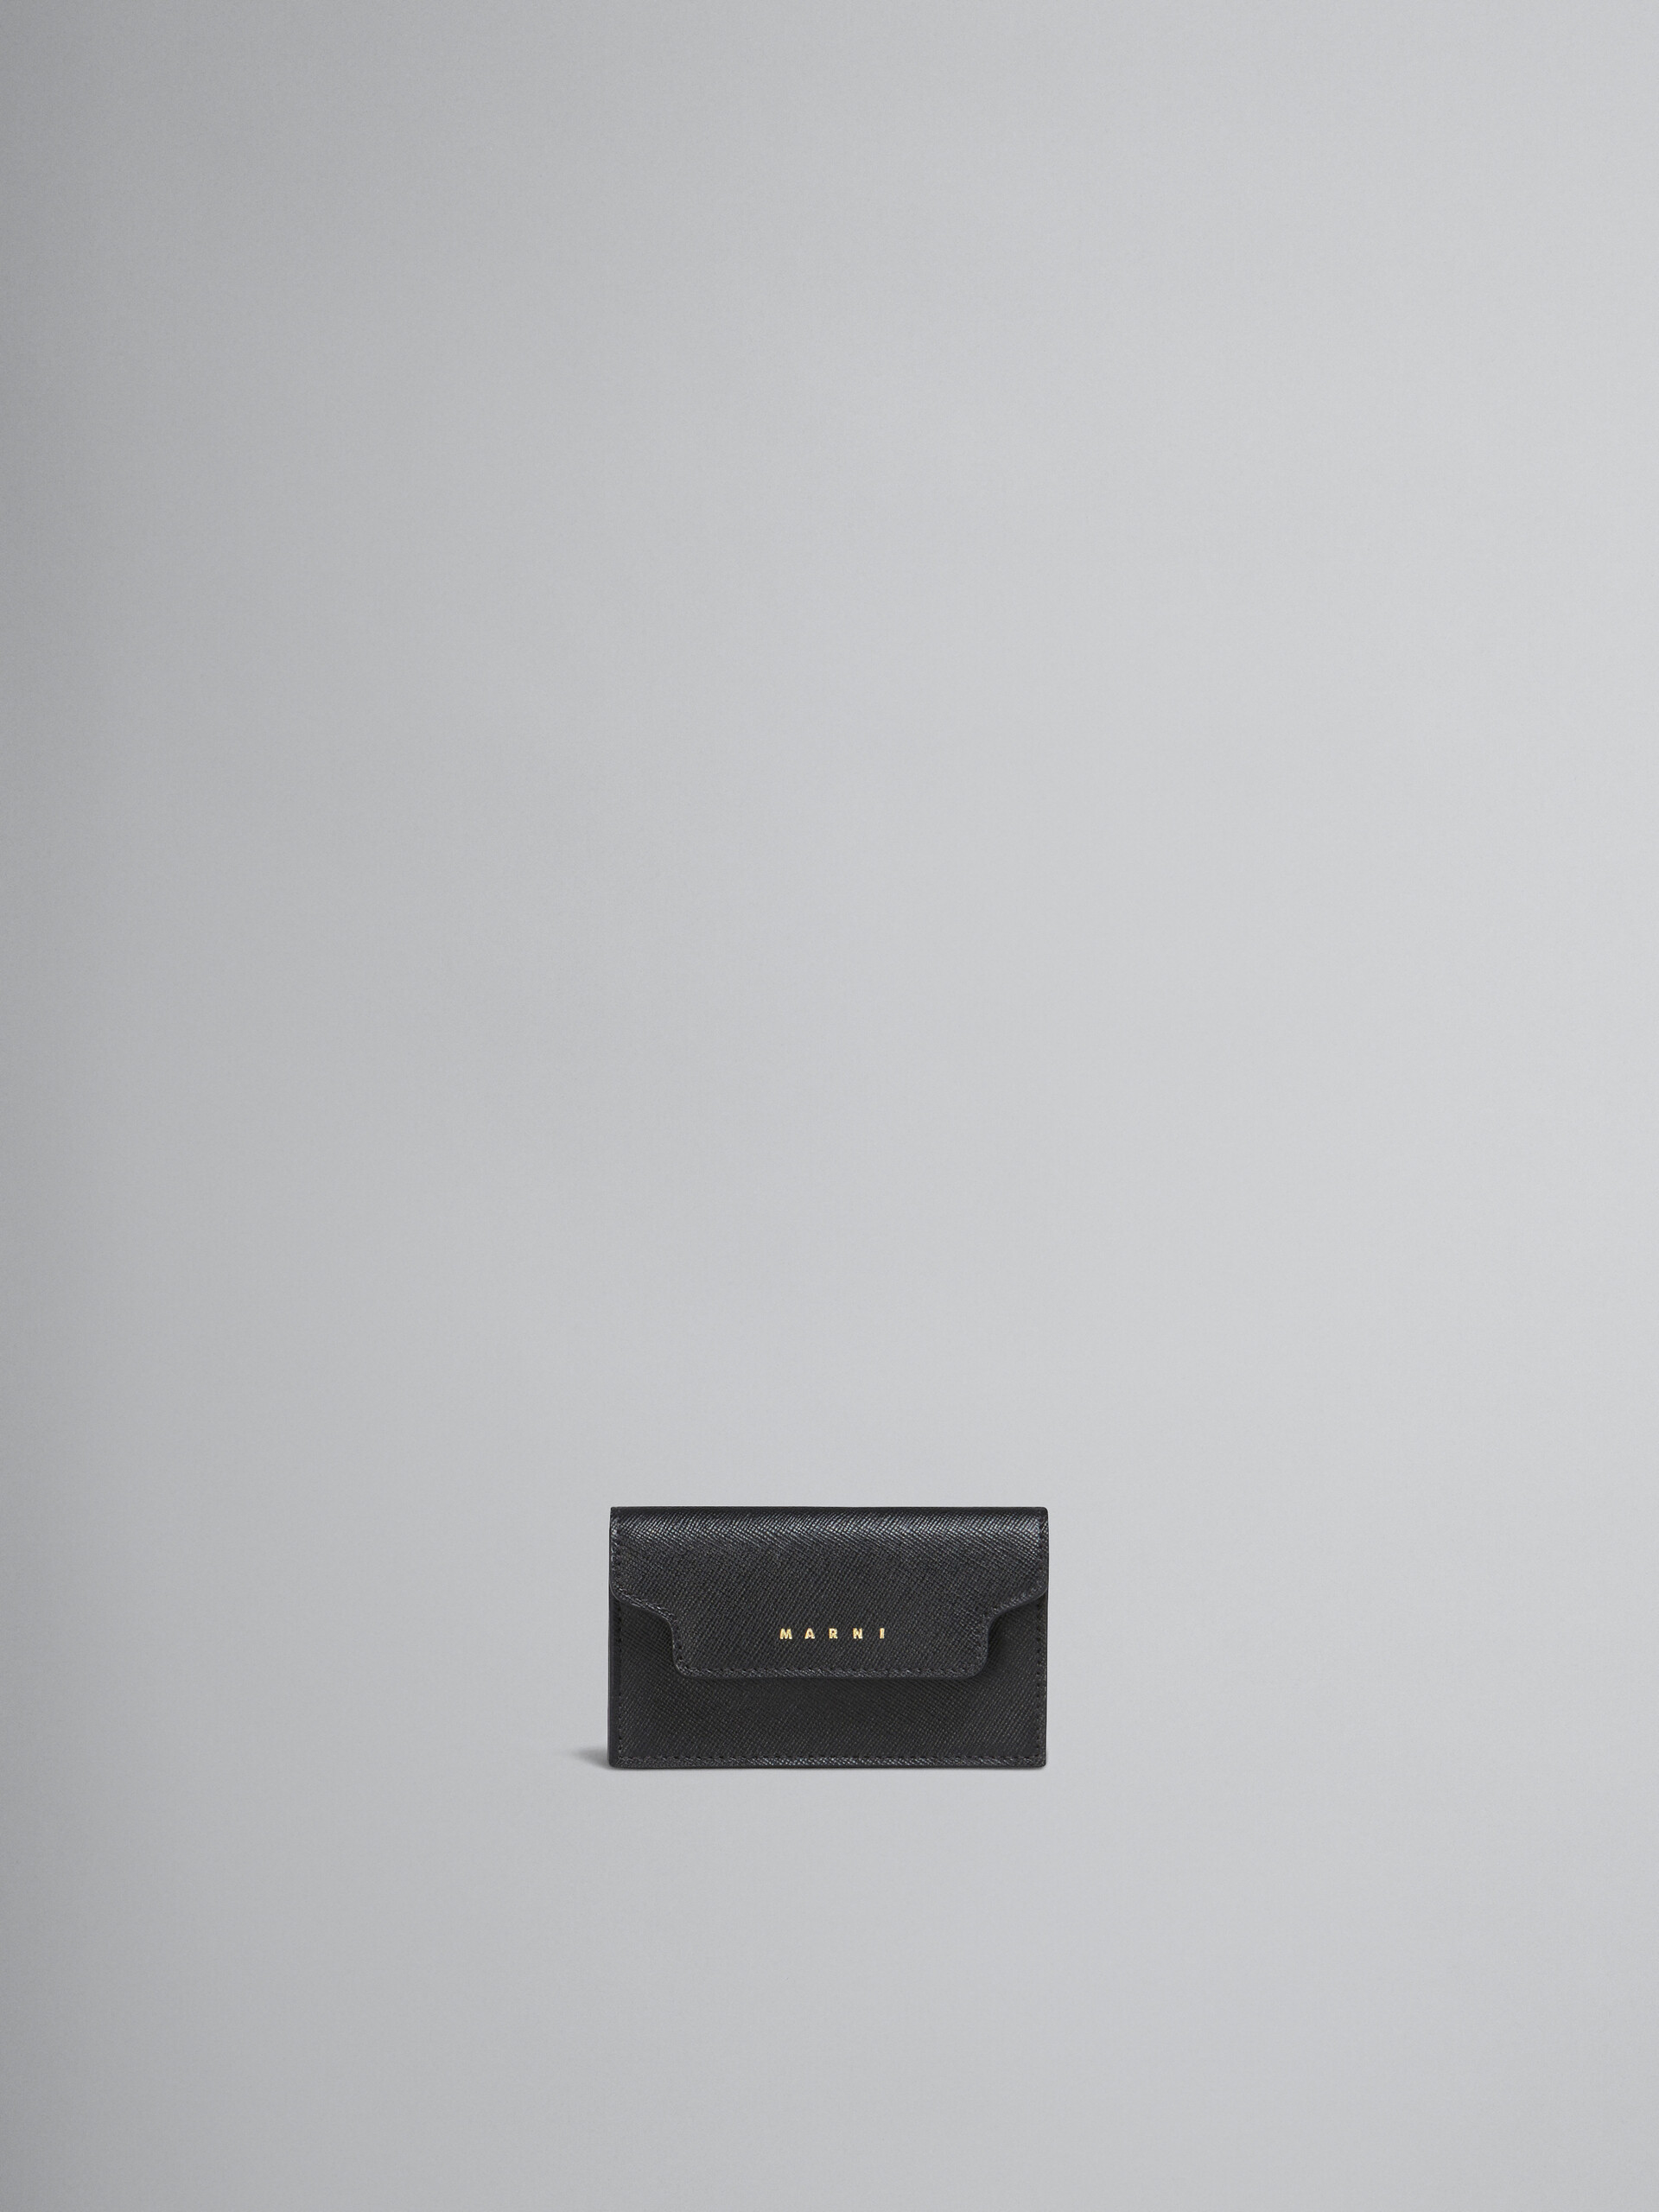 Portabiglietti da visita in pelle saffiano nera - Portafogli - Image 1